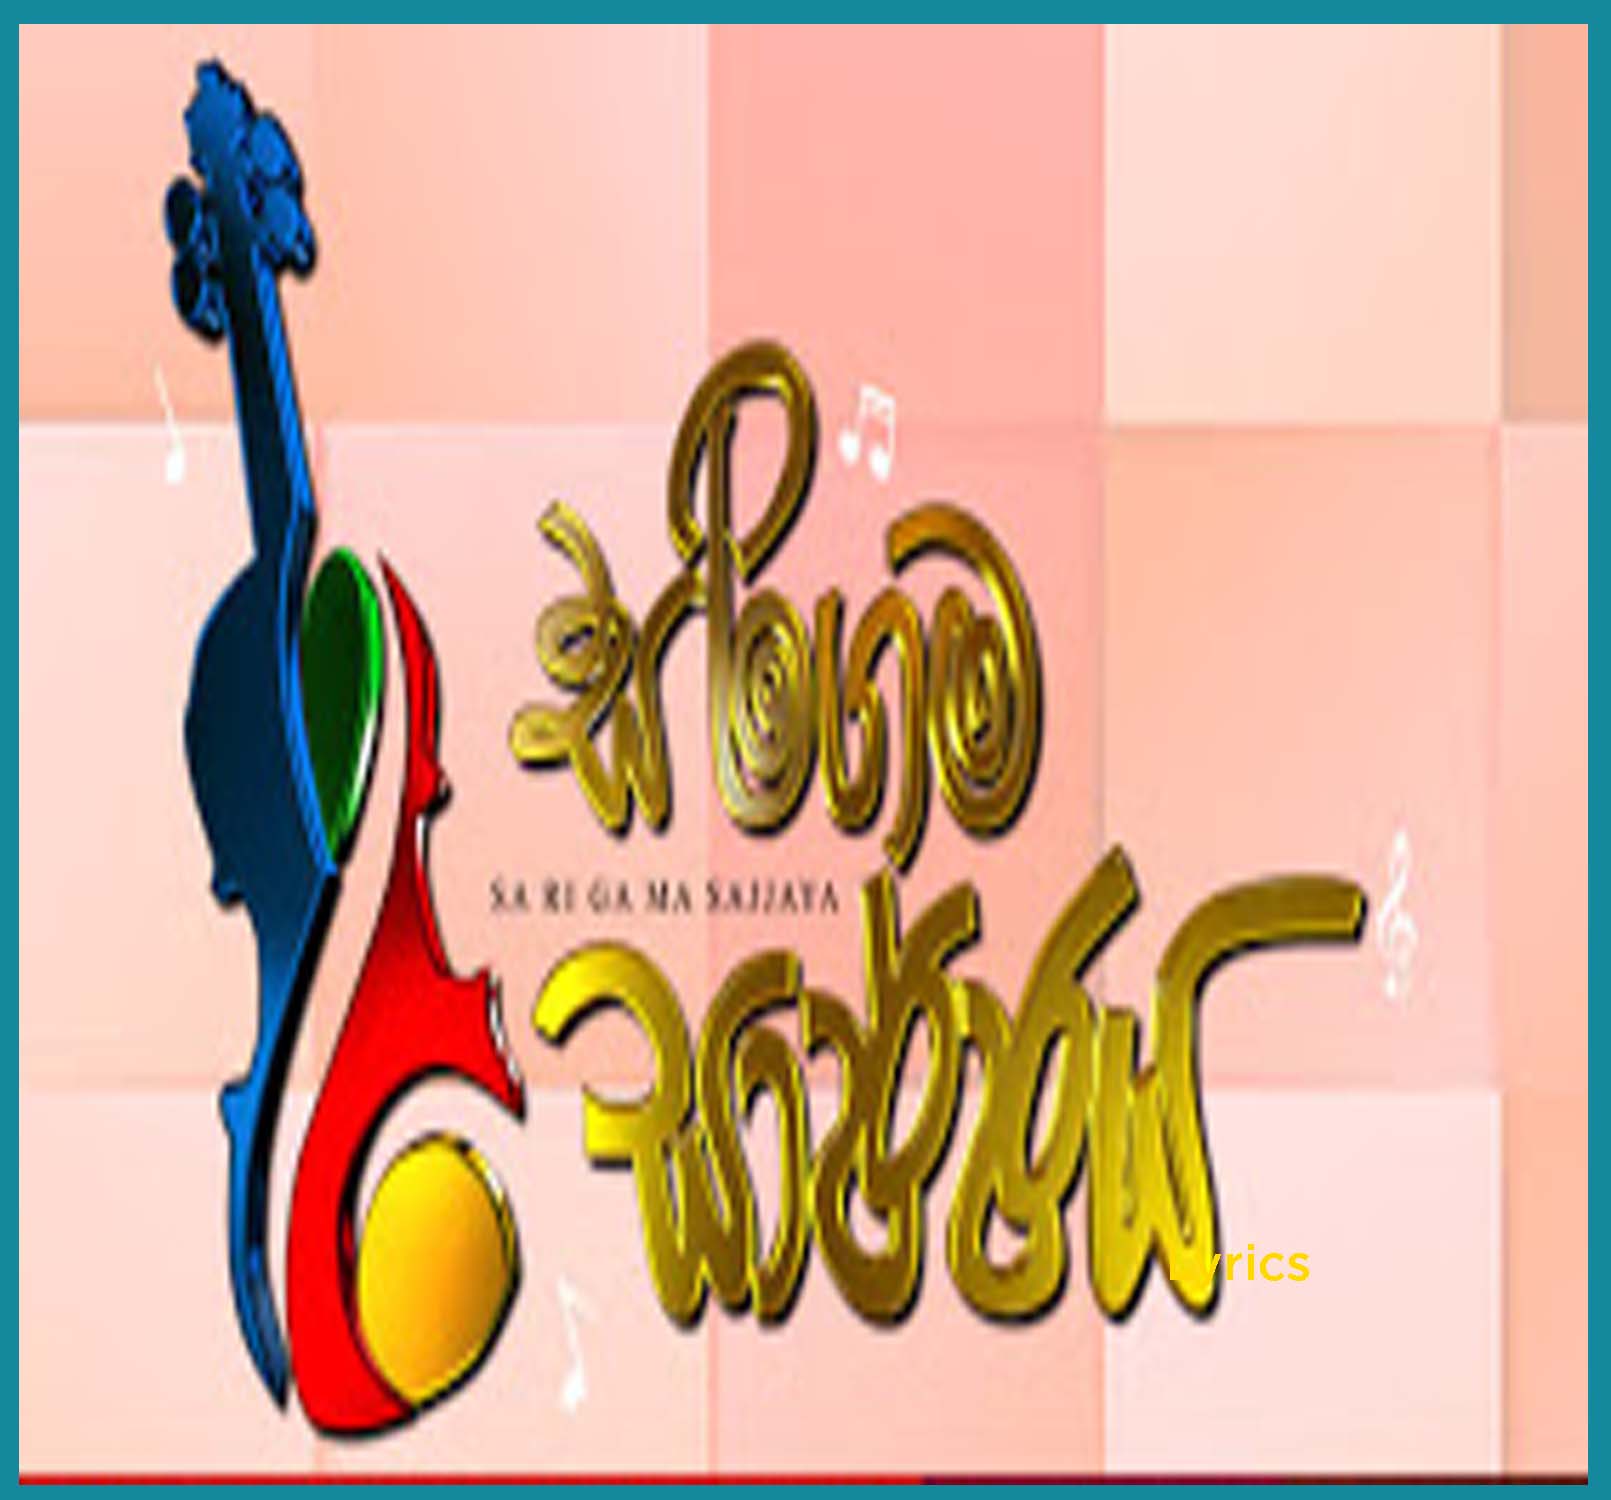 200 - Siththam Karamin - Dayan Witharana - Sirasa FM Sarigama Sajjaya mp3 Image